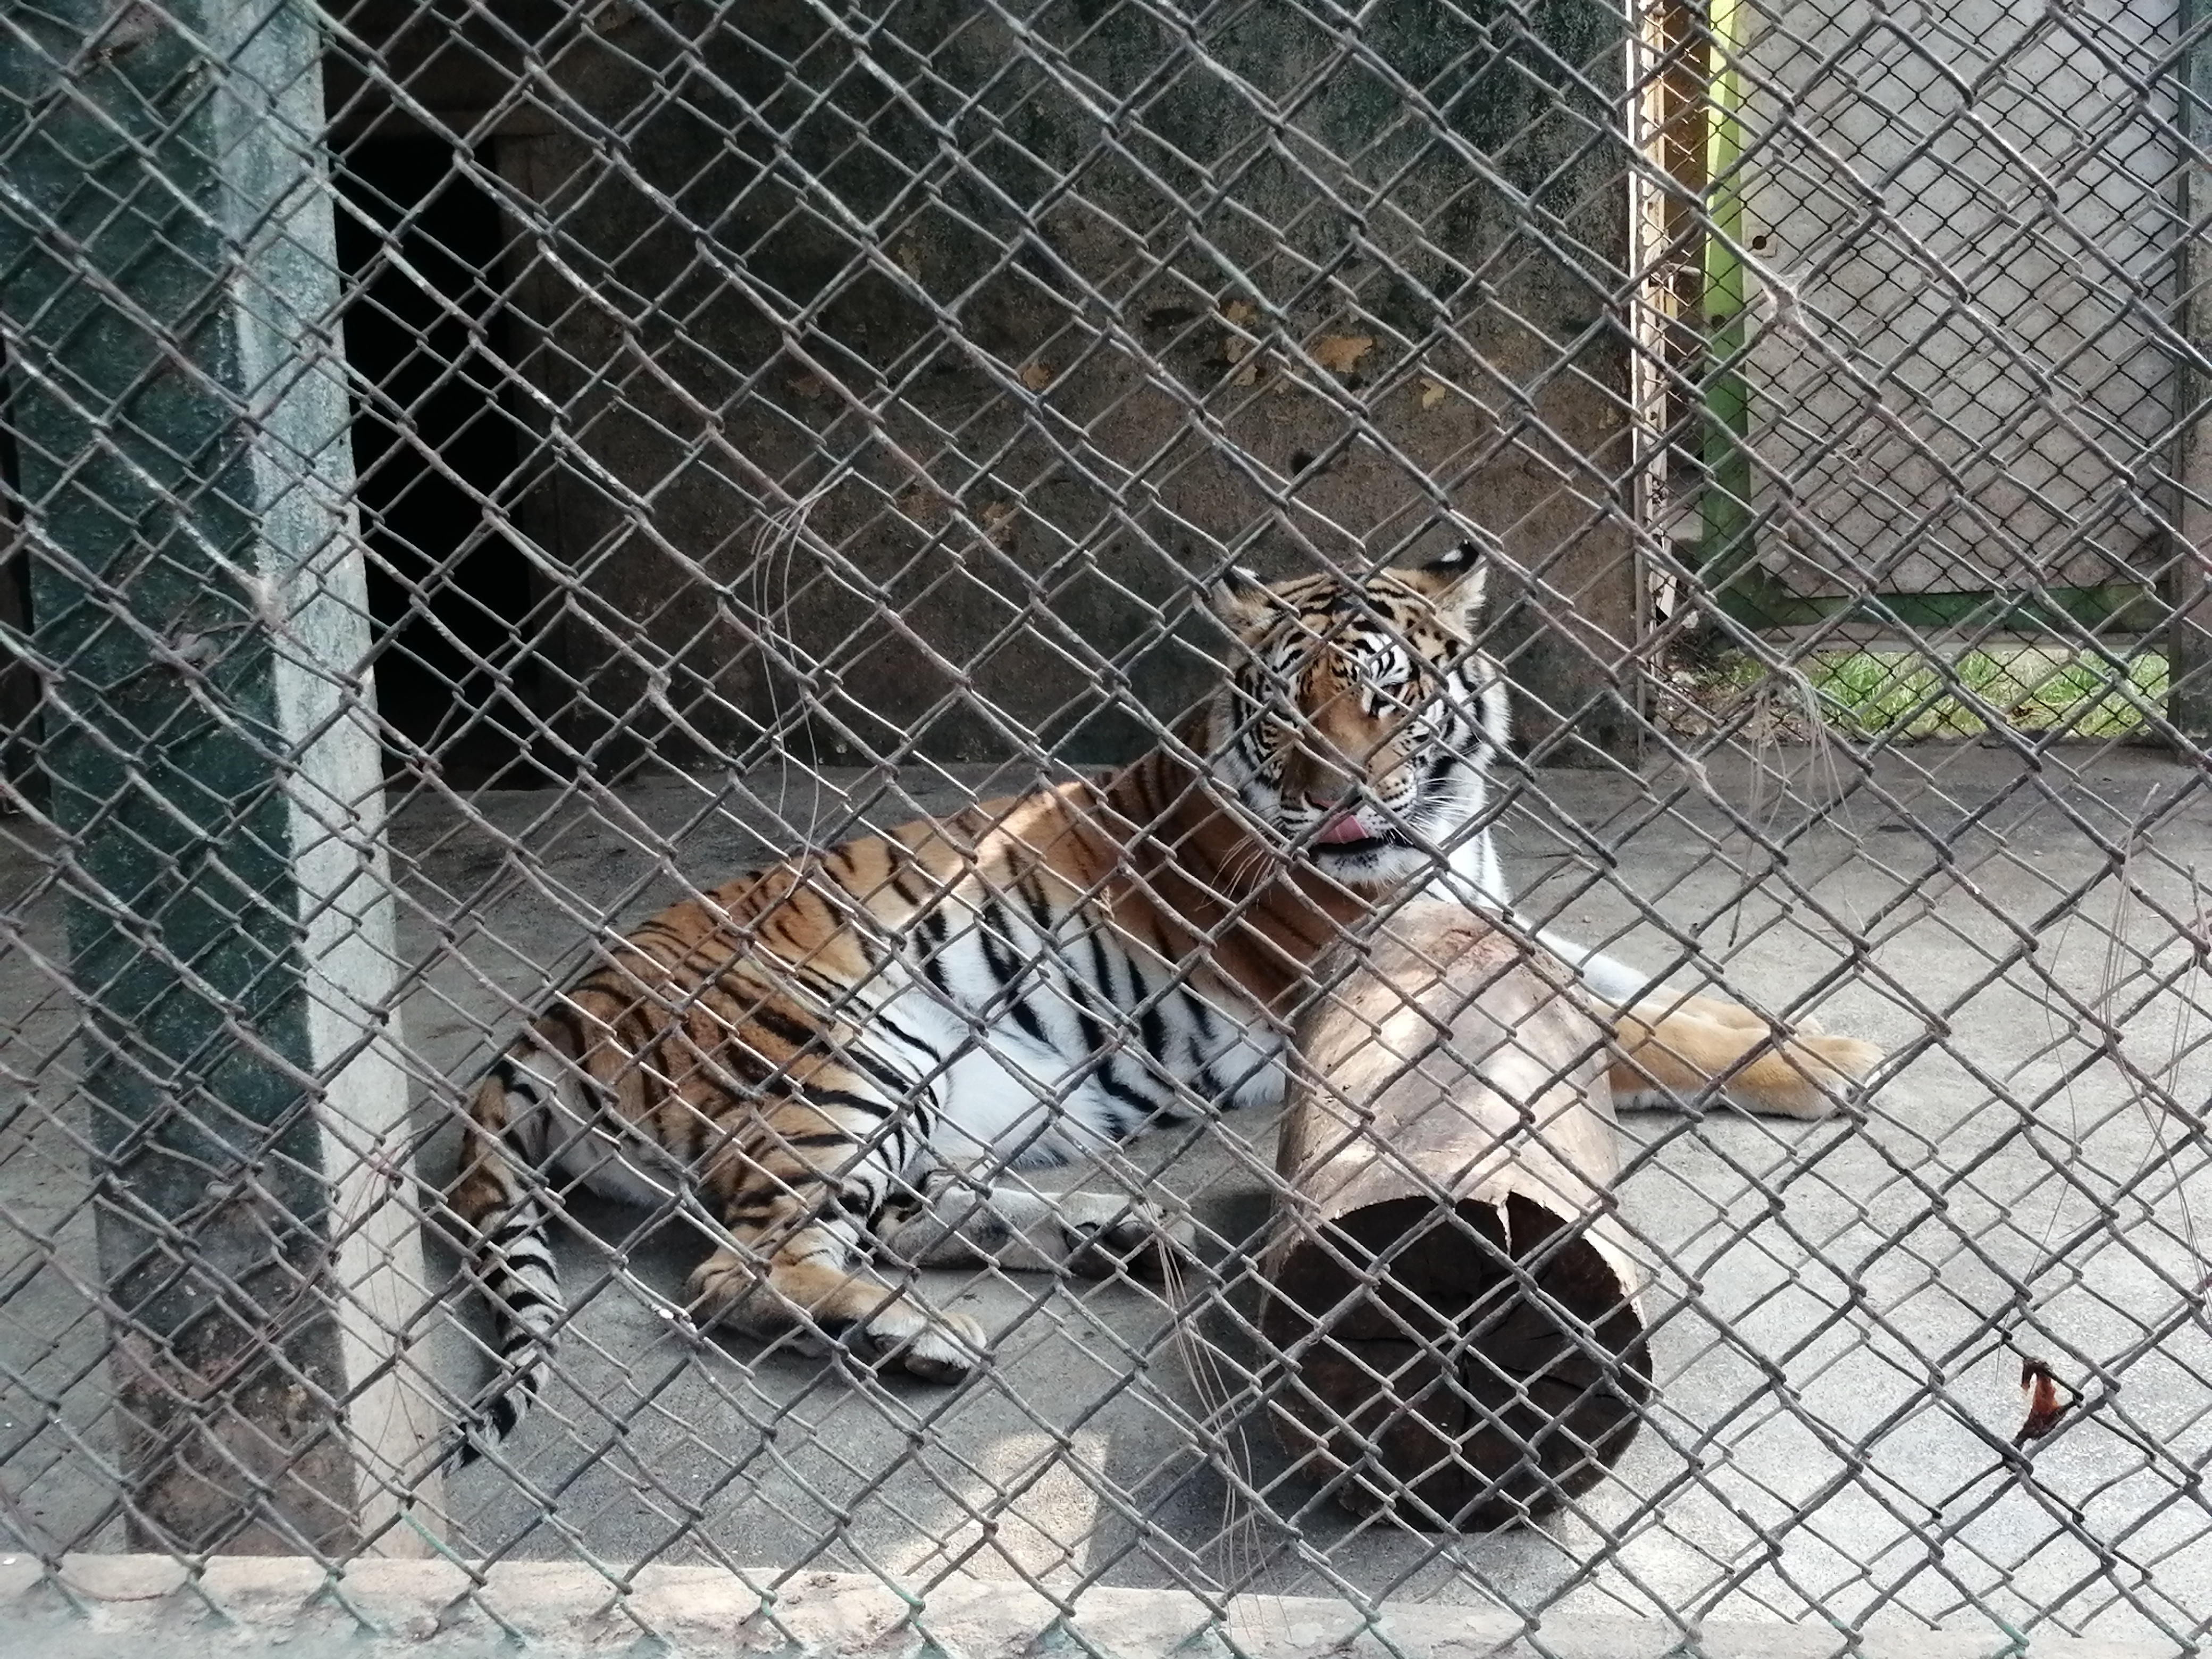 Los tigres de bengala del zoológico llegaron de cachorros y pertenecían a un circo, se busca preservar su especie y necesitan de un recinto adecuado. (Foto Prensa Libre: María Longo) 